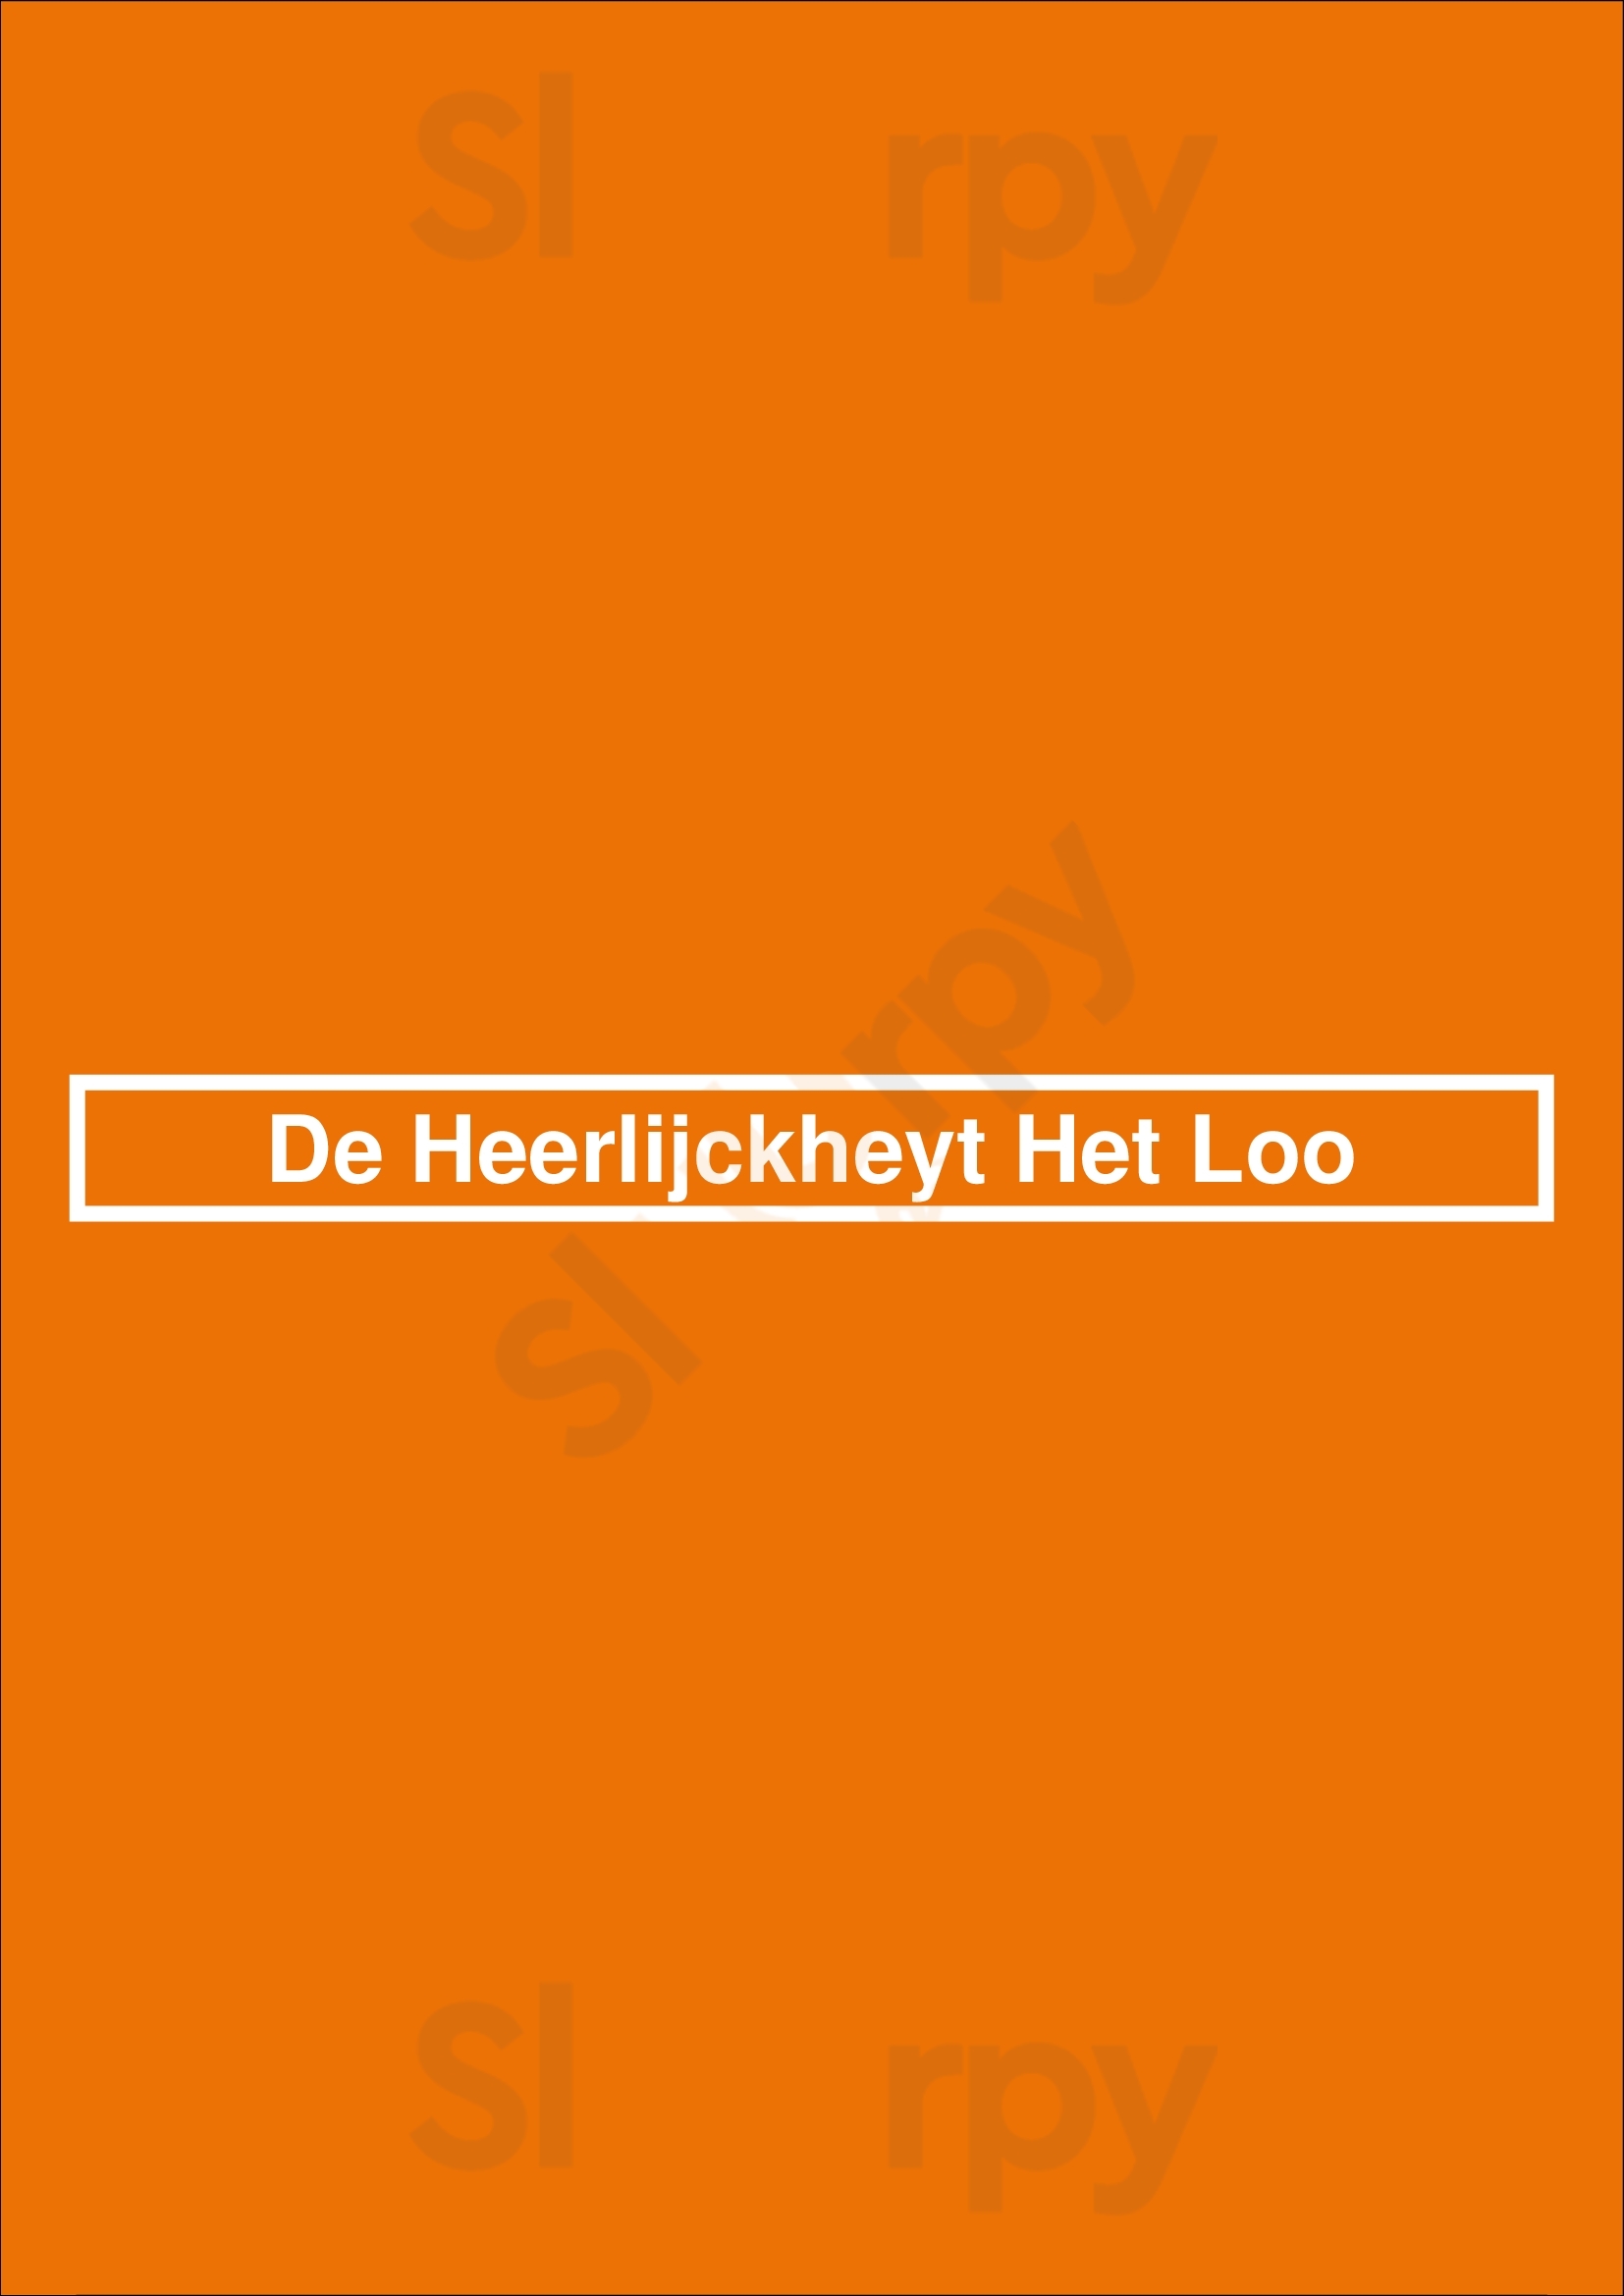 De Heerlijckheyt Het Loo Apeldoorn Menu - 1